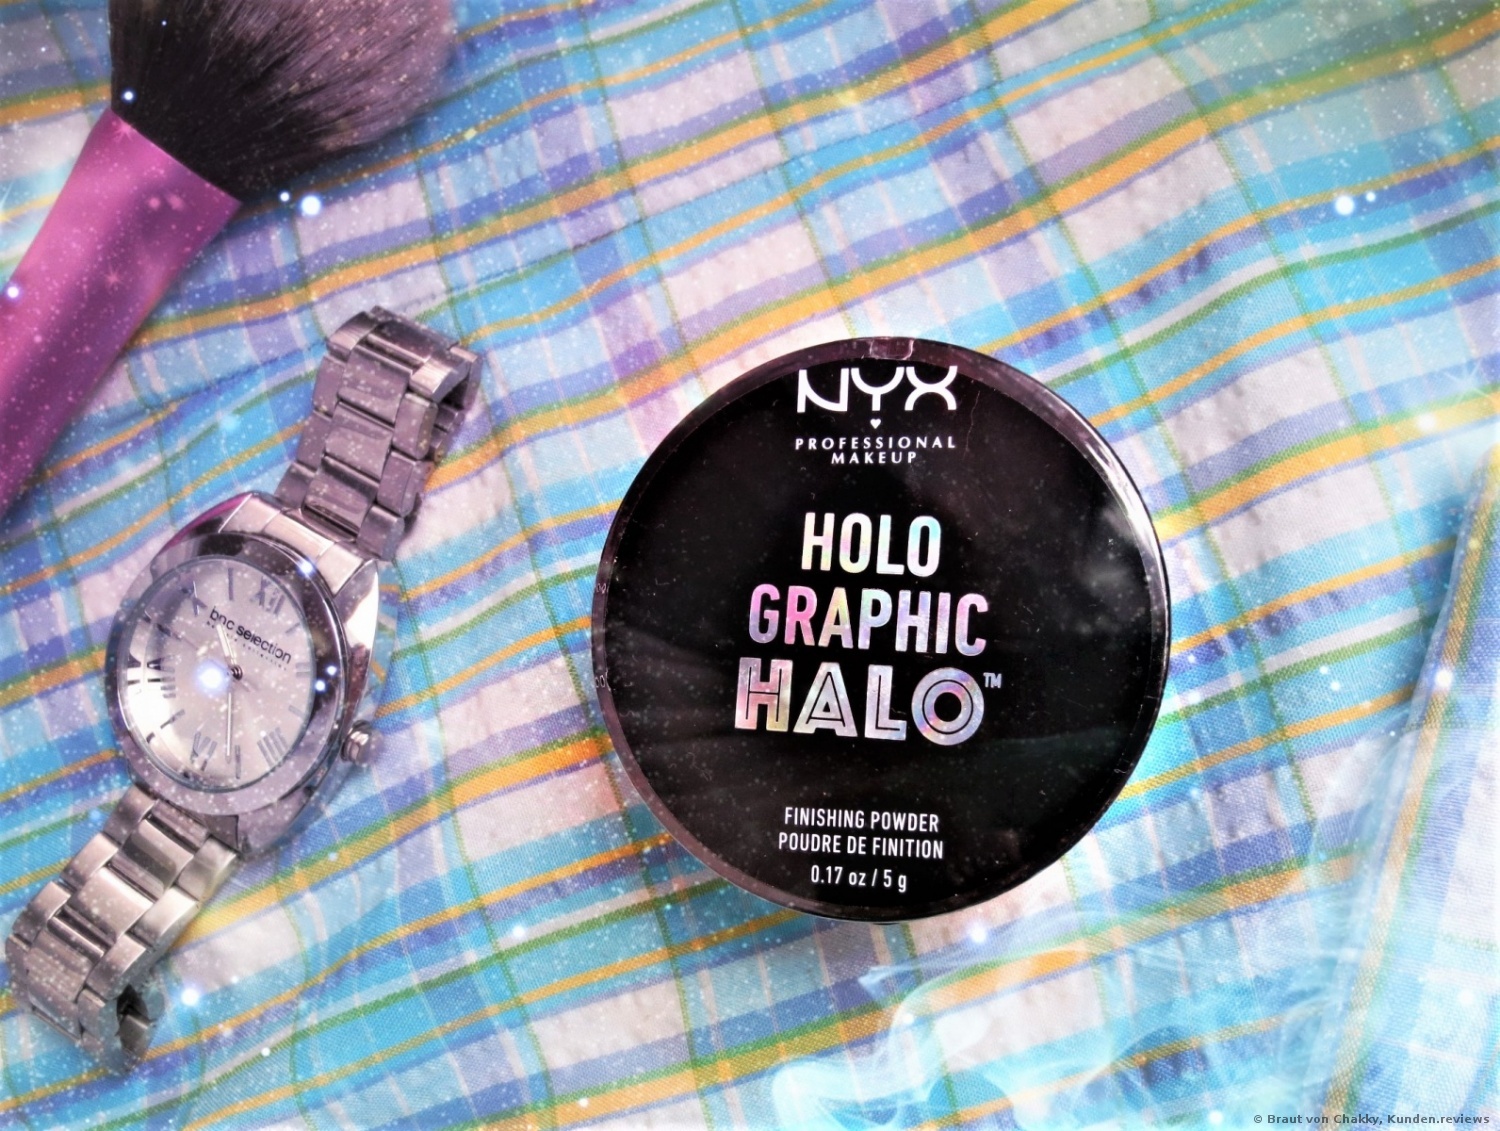 NYX Holographic Halo Finishing Powder Puder Foto